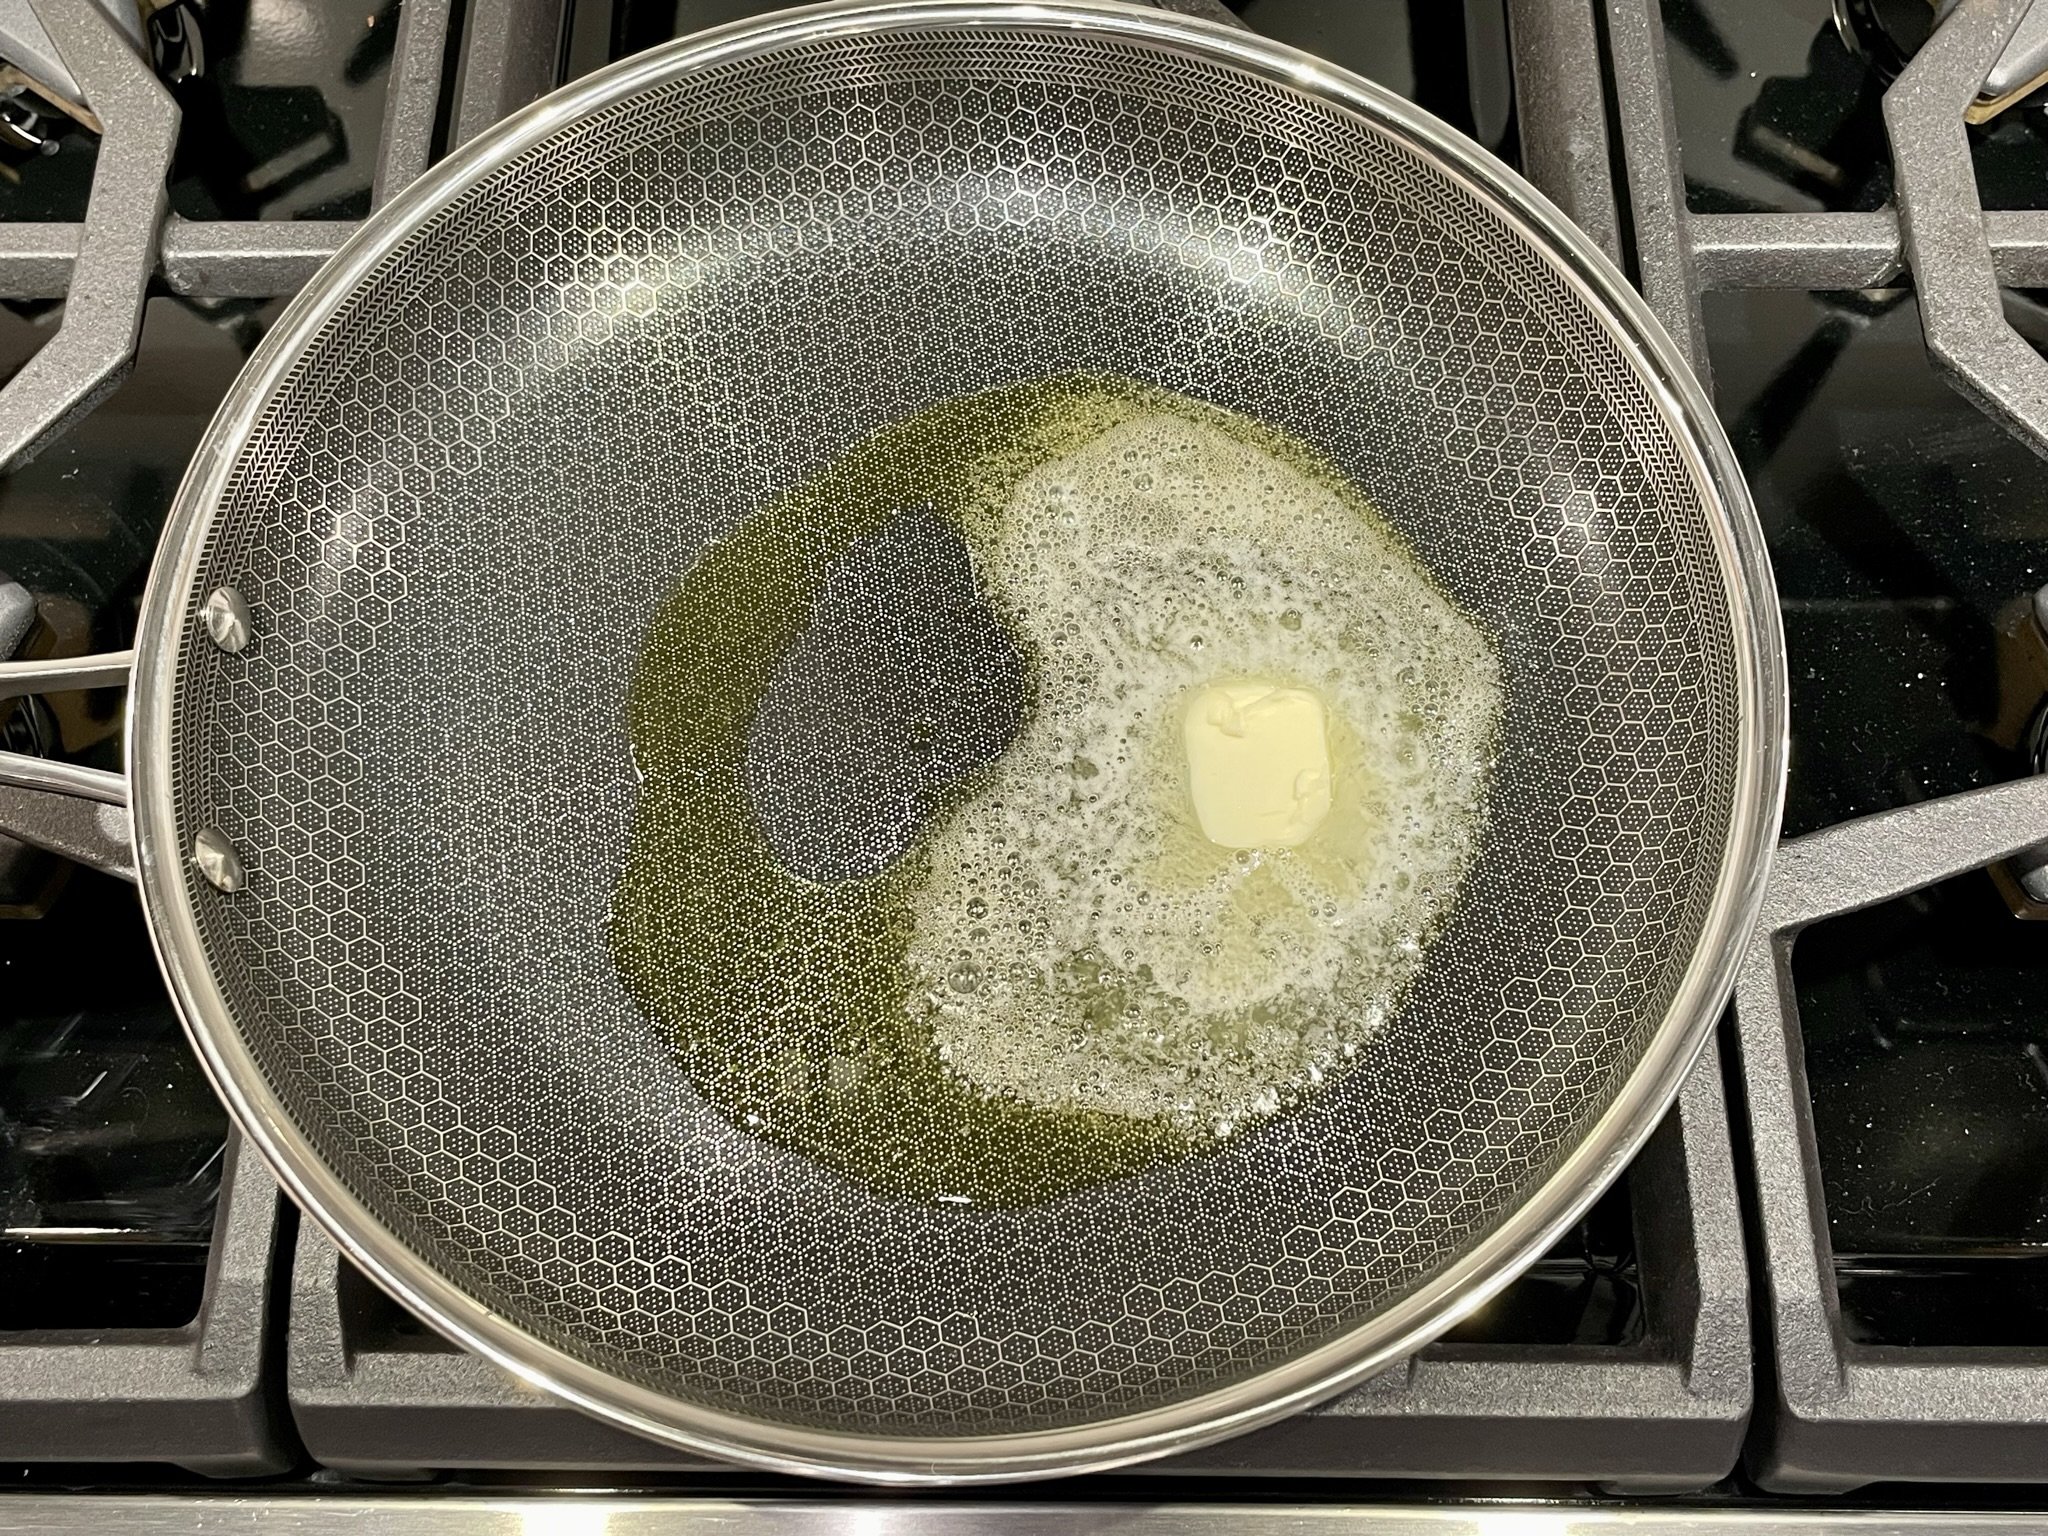 Olive oil &amp; butter (foamy).